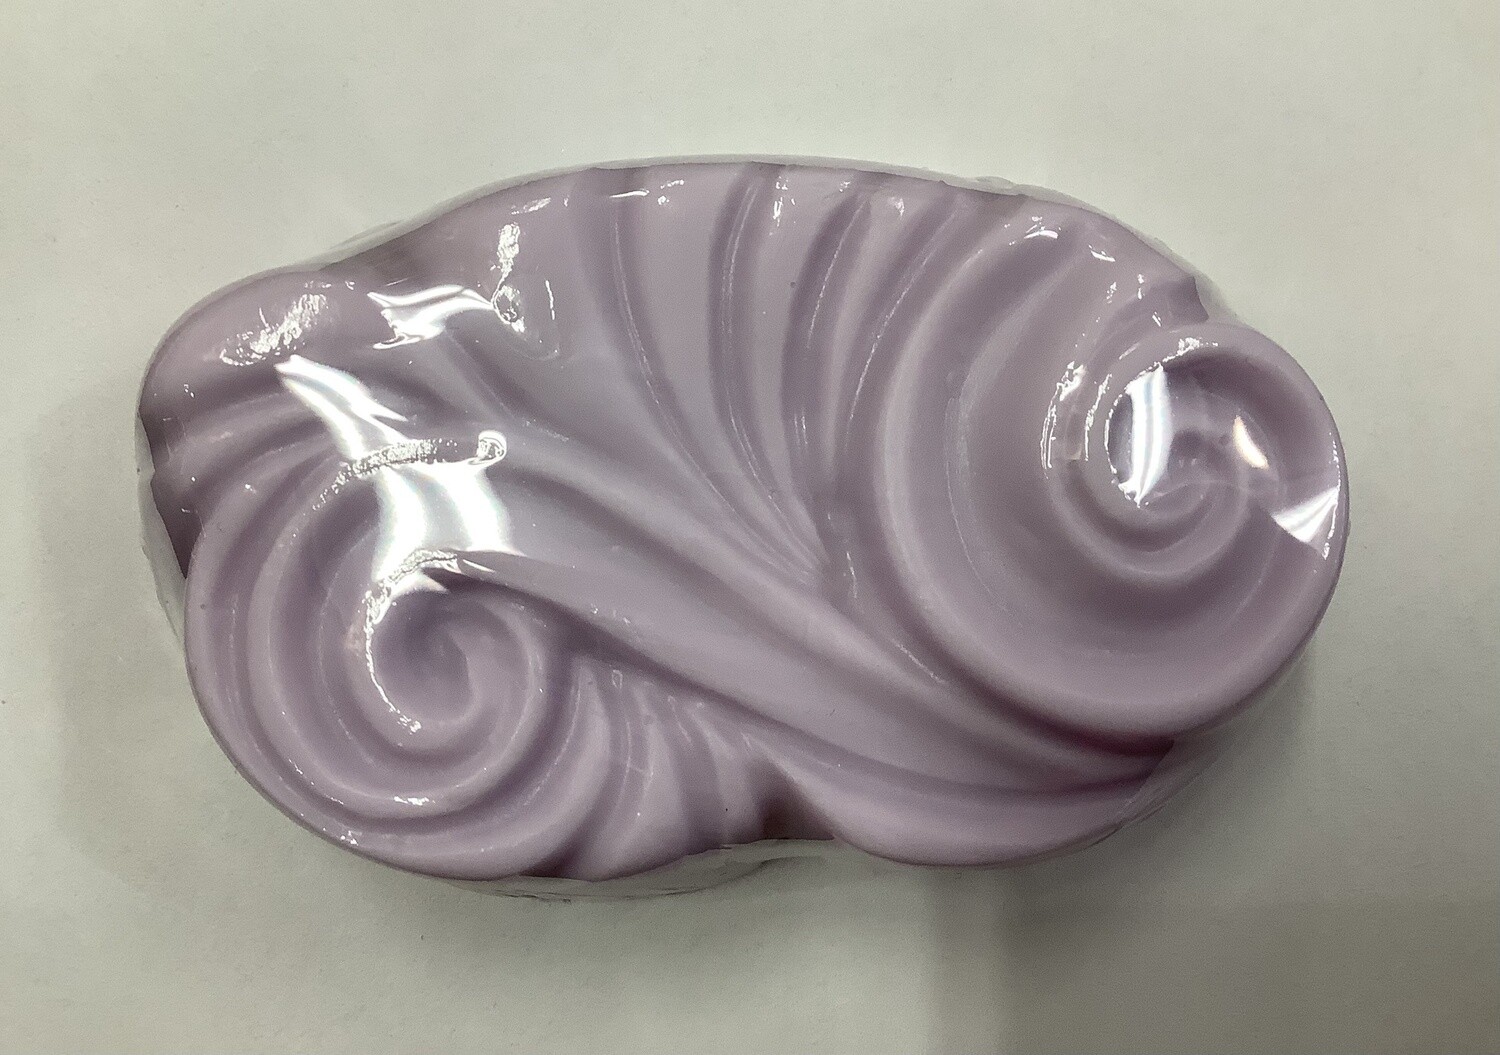 A Lavender Soap